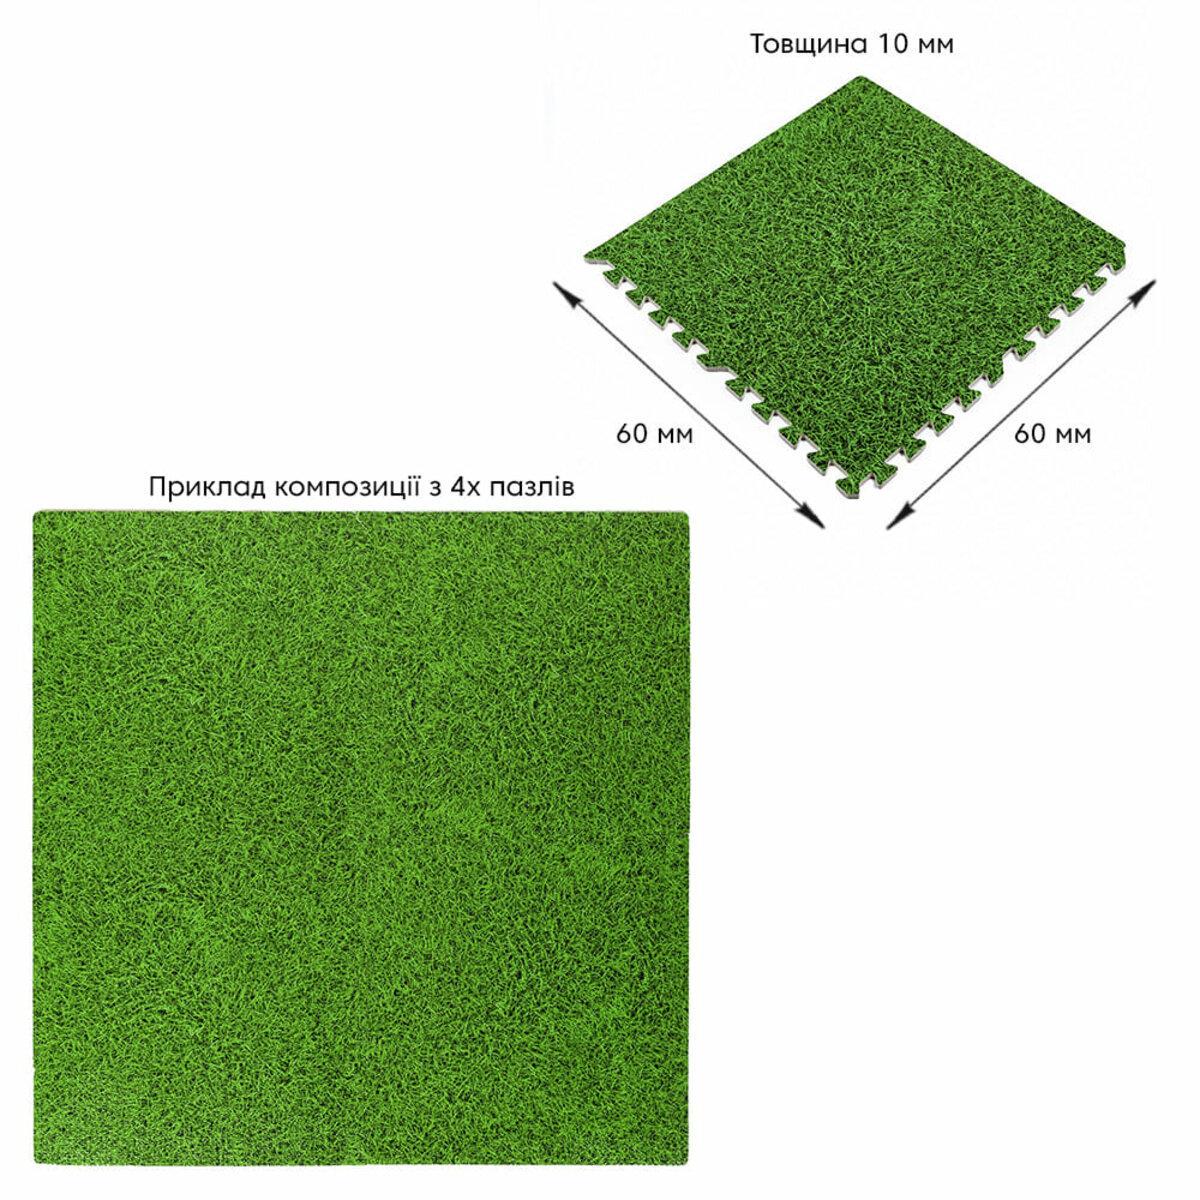 Гумове покриття пазл модульний 600x600x10 мм Зелена трава (SW-00000153) - фото 6